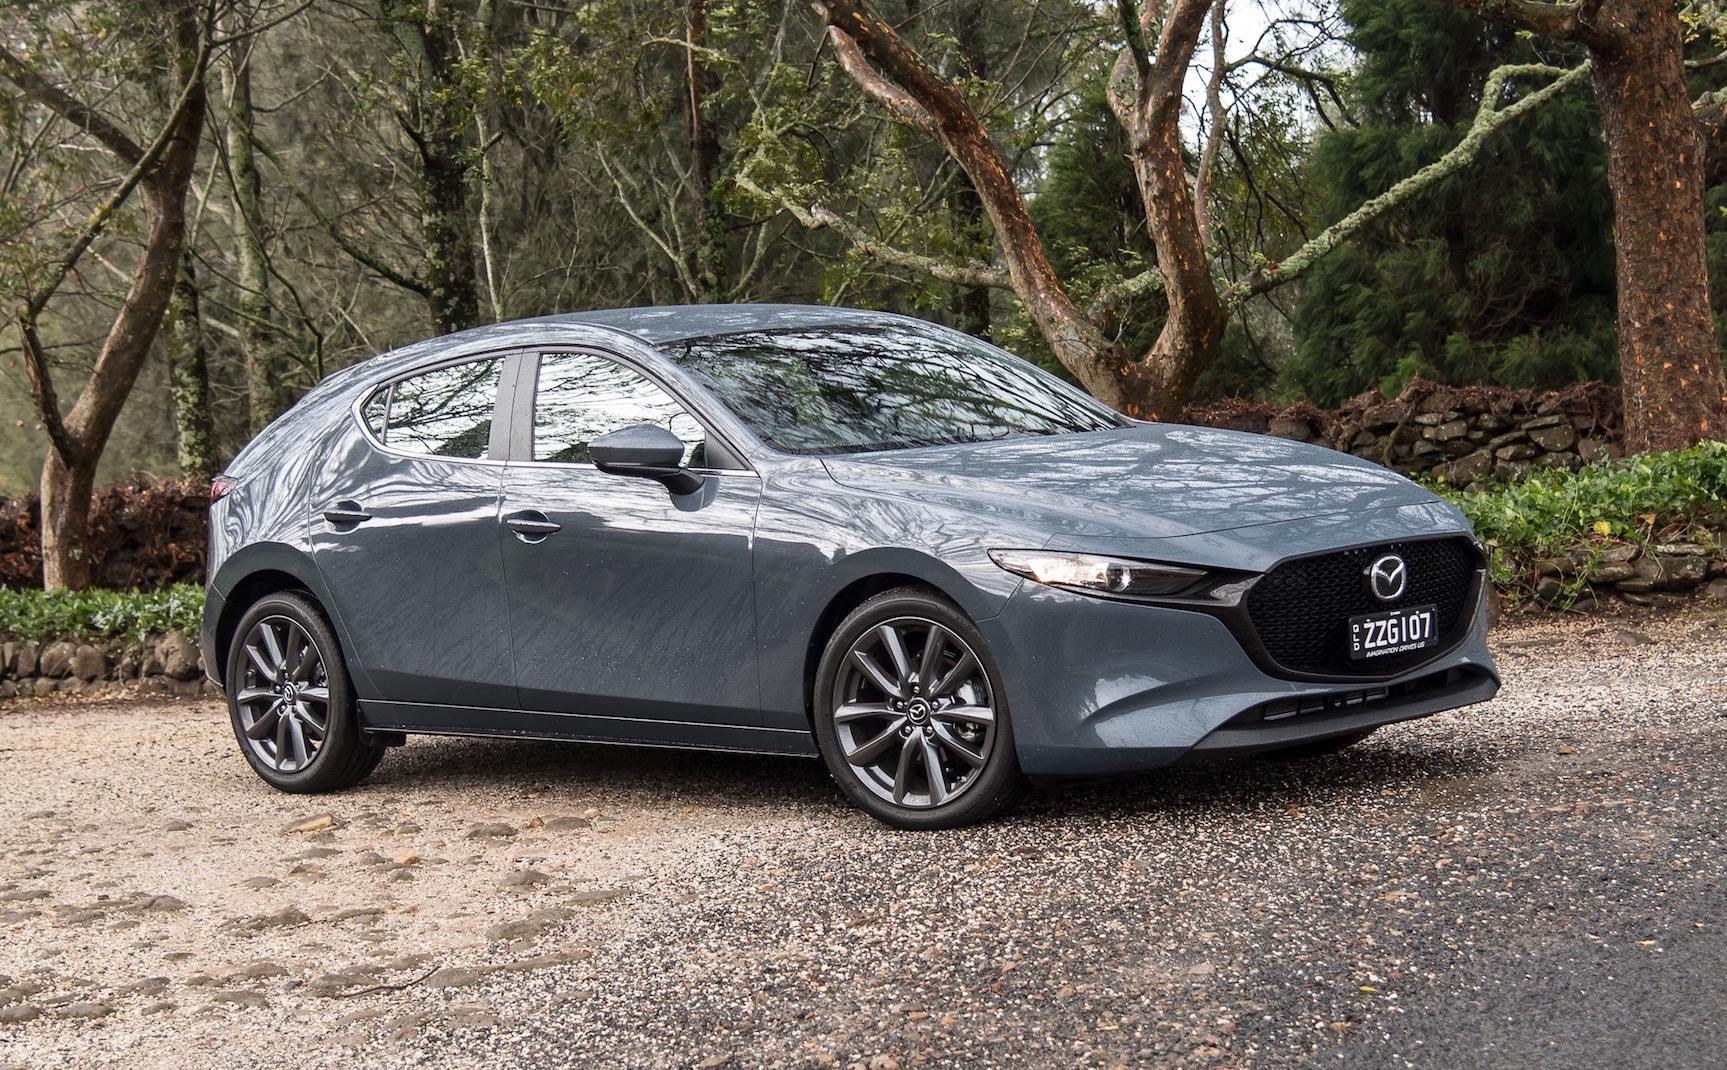 2019 Mazda3 Evolve G20 review (video)